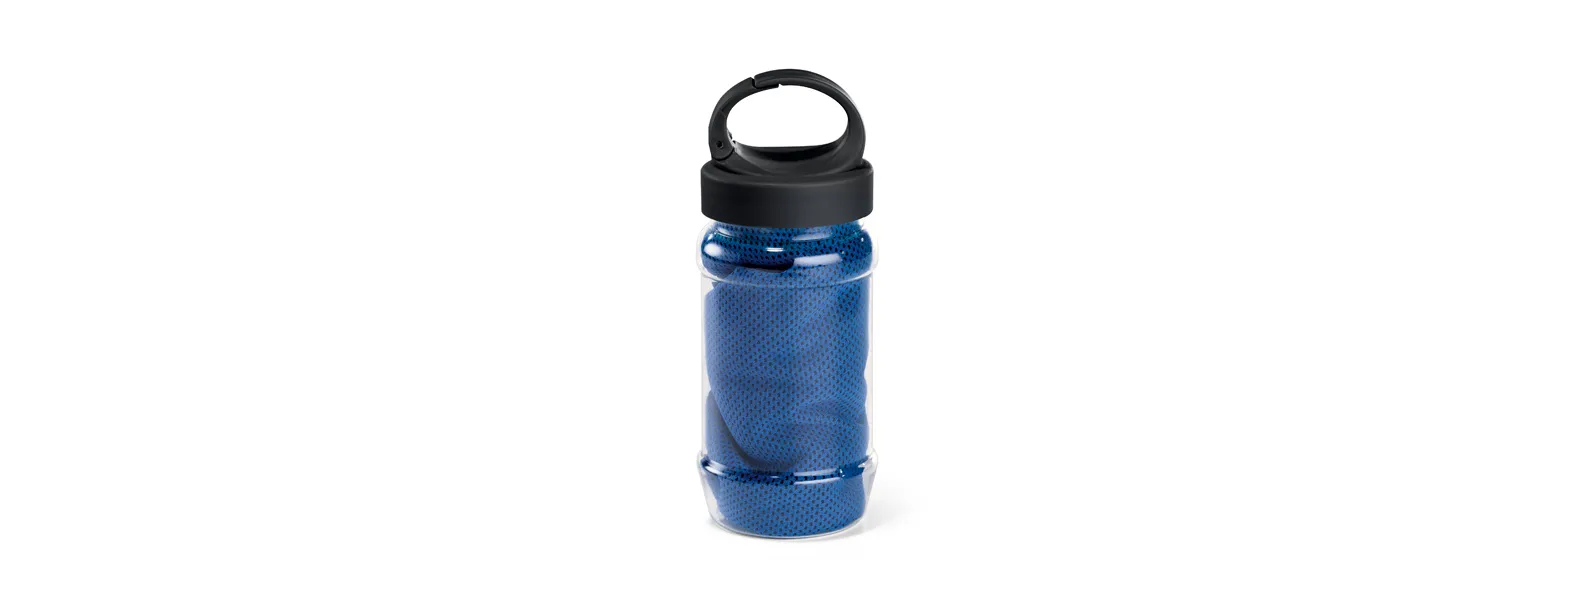 Toalha para esporte azul com garrafa em PP e PET. Toalha refrescante, quando molhada permanece fria durante horas. Se aquecer, basta balançar reativando sua frescura. Reutilizável e lavável à máquina. Capacidade da garrafa: 440ml